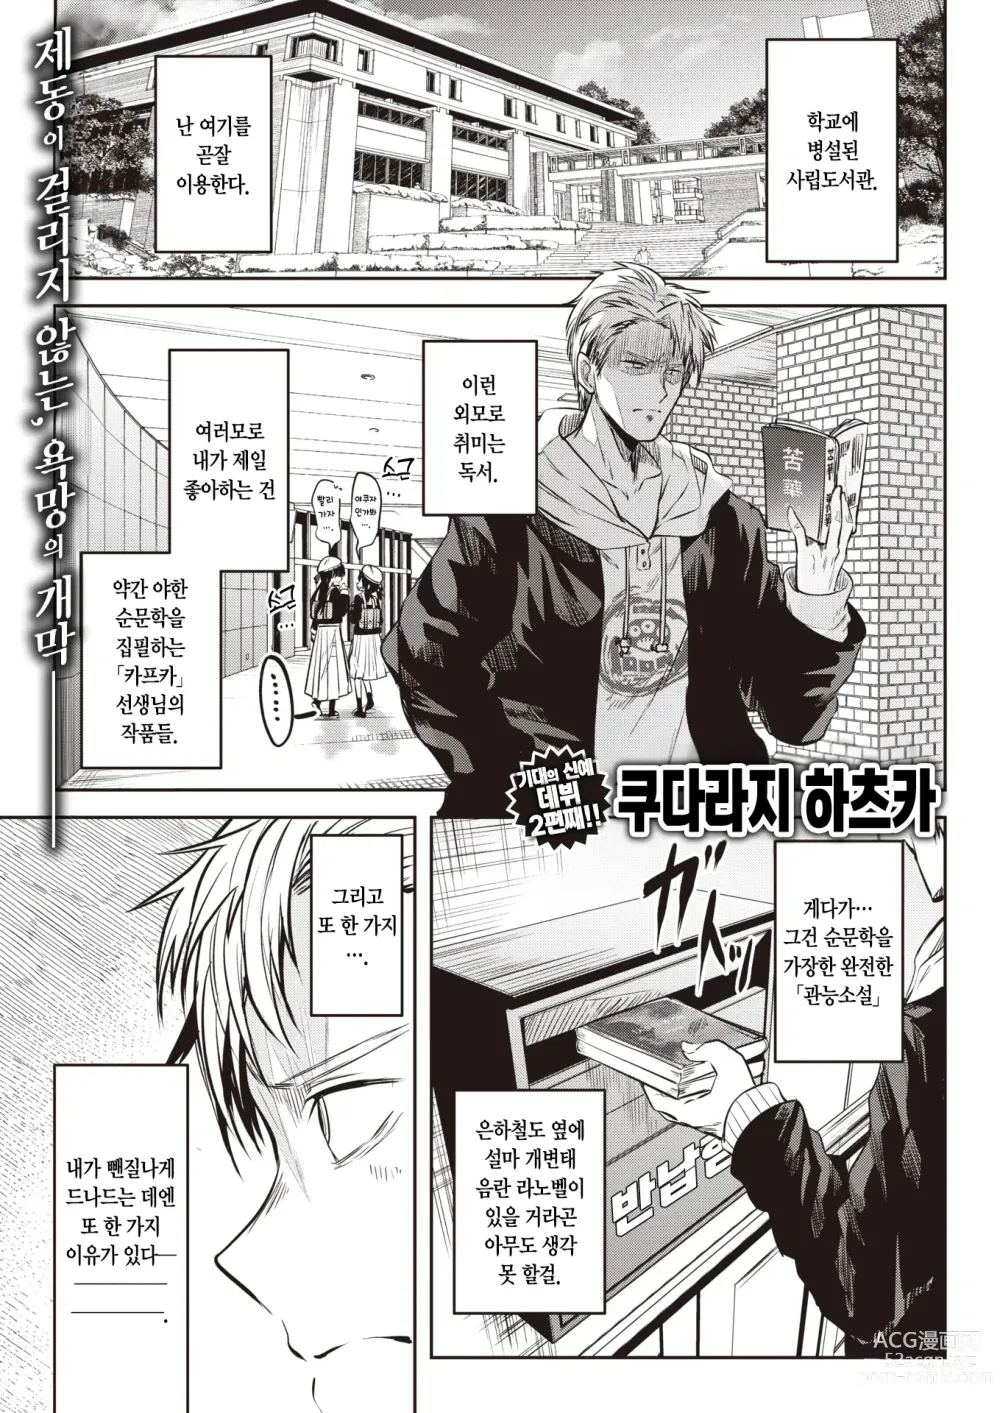 Page 3 of manga 금서고의 몽마